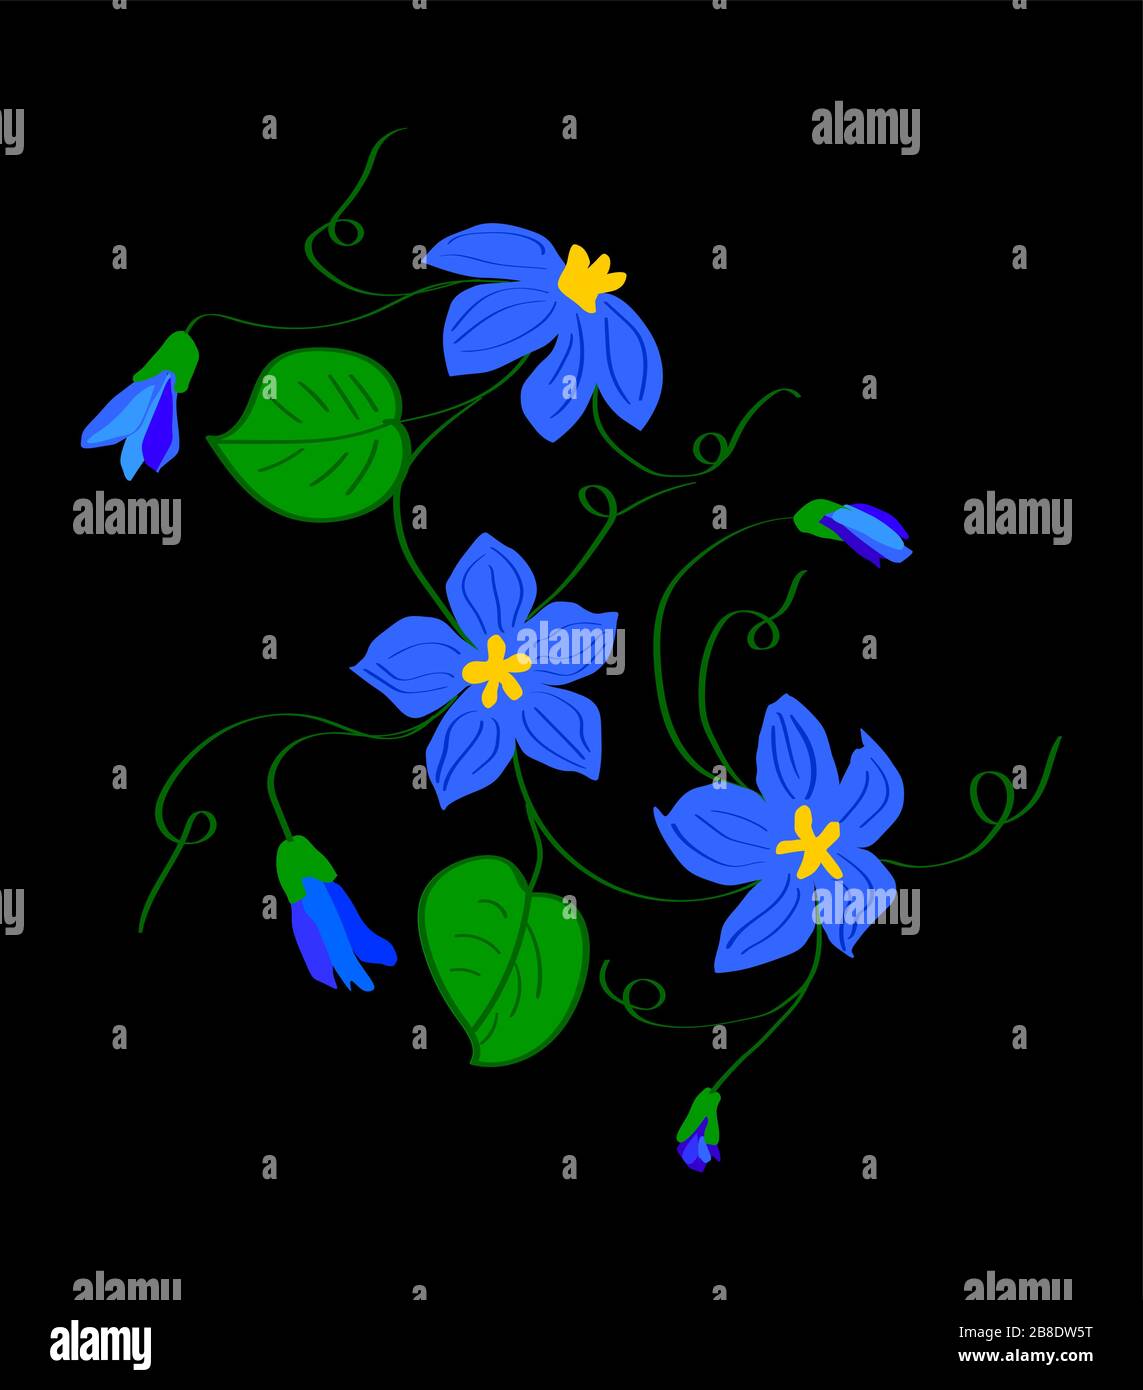 tre fiori blu con centri arancioni con steli di viti con ricci e boccioli semiventi su sfondo nero e nero Illustrazione Vettoriale